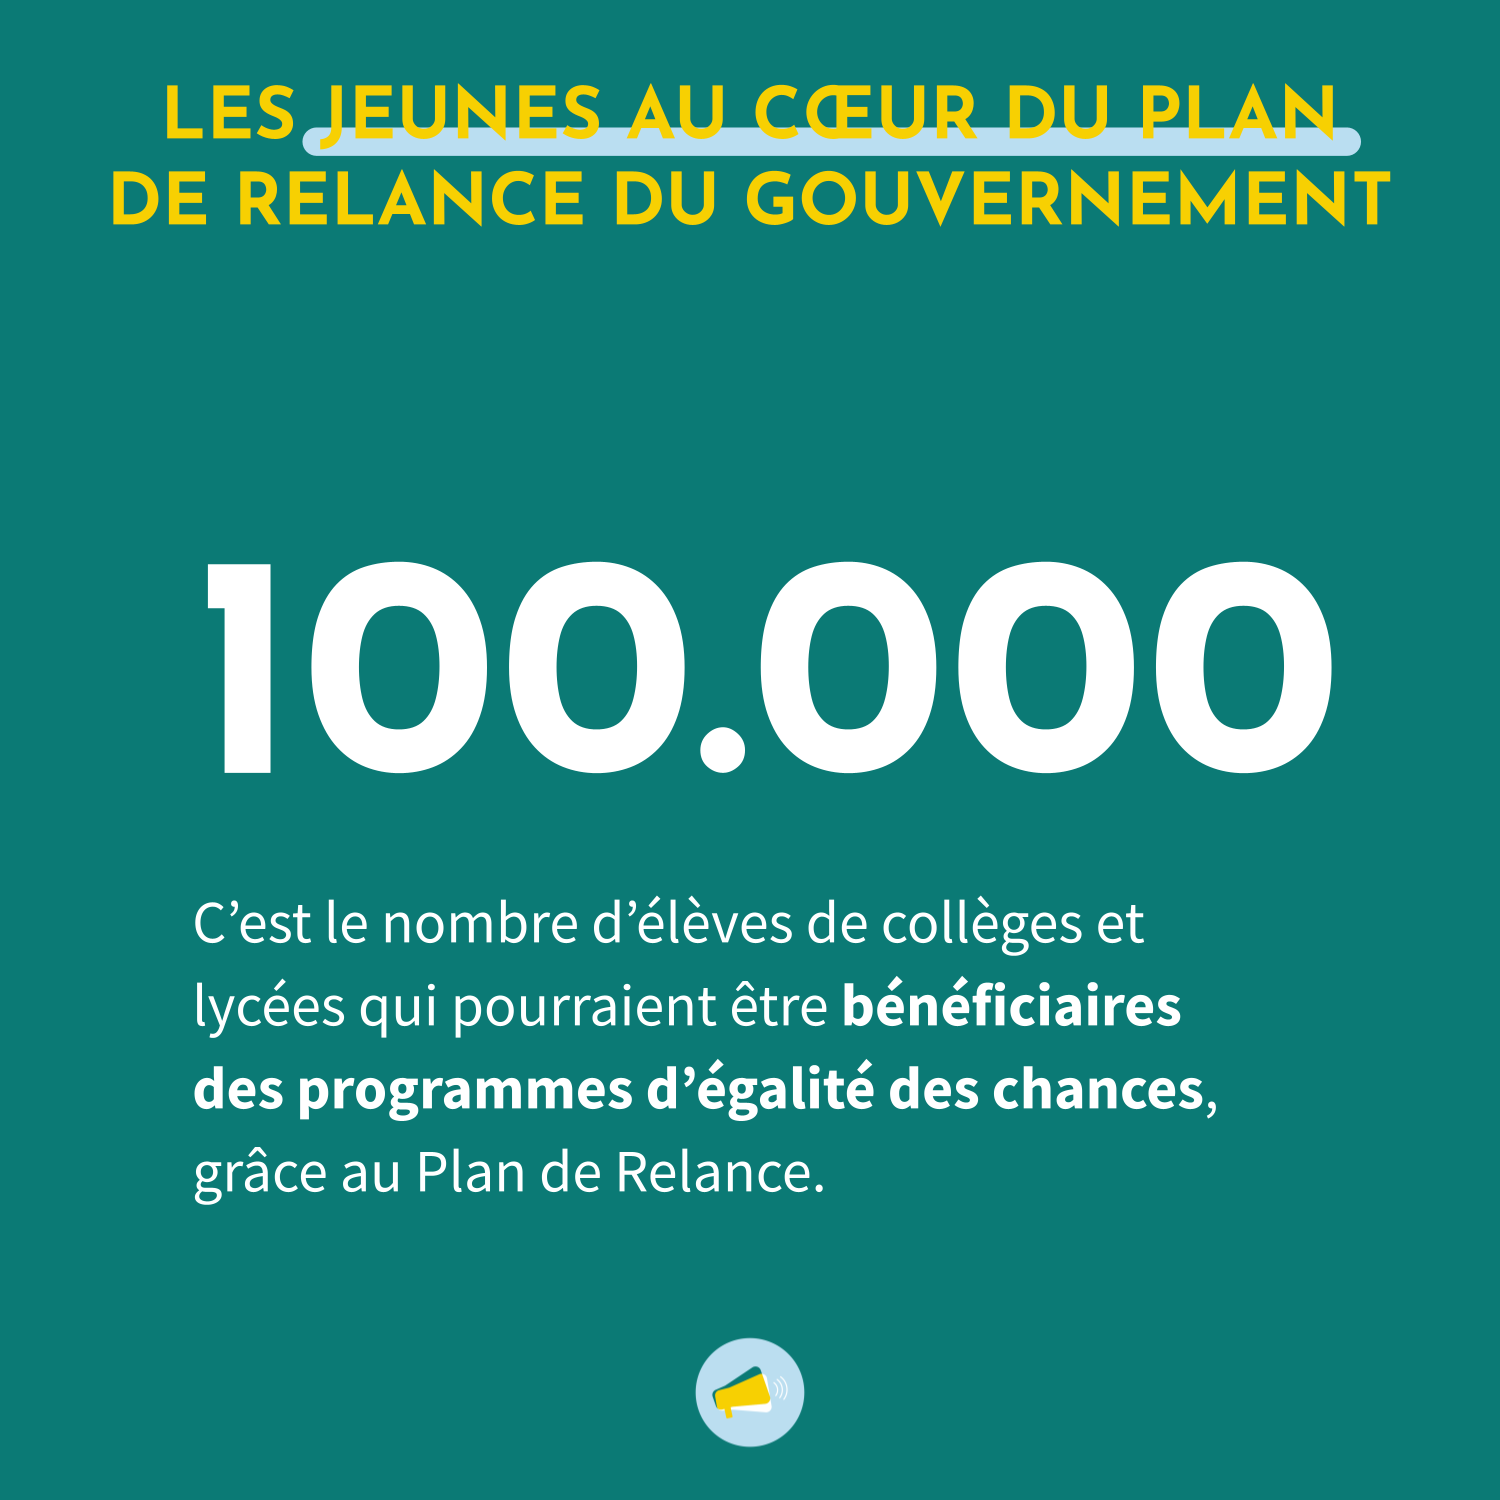 Le Plan de Relance français permettra à 100 000 jeunes de bénéficier de programmes d'